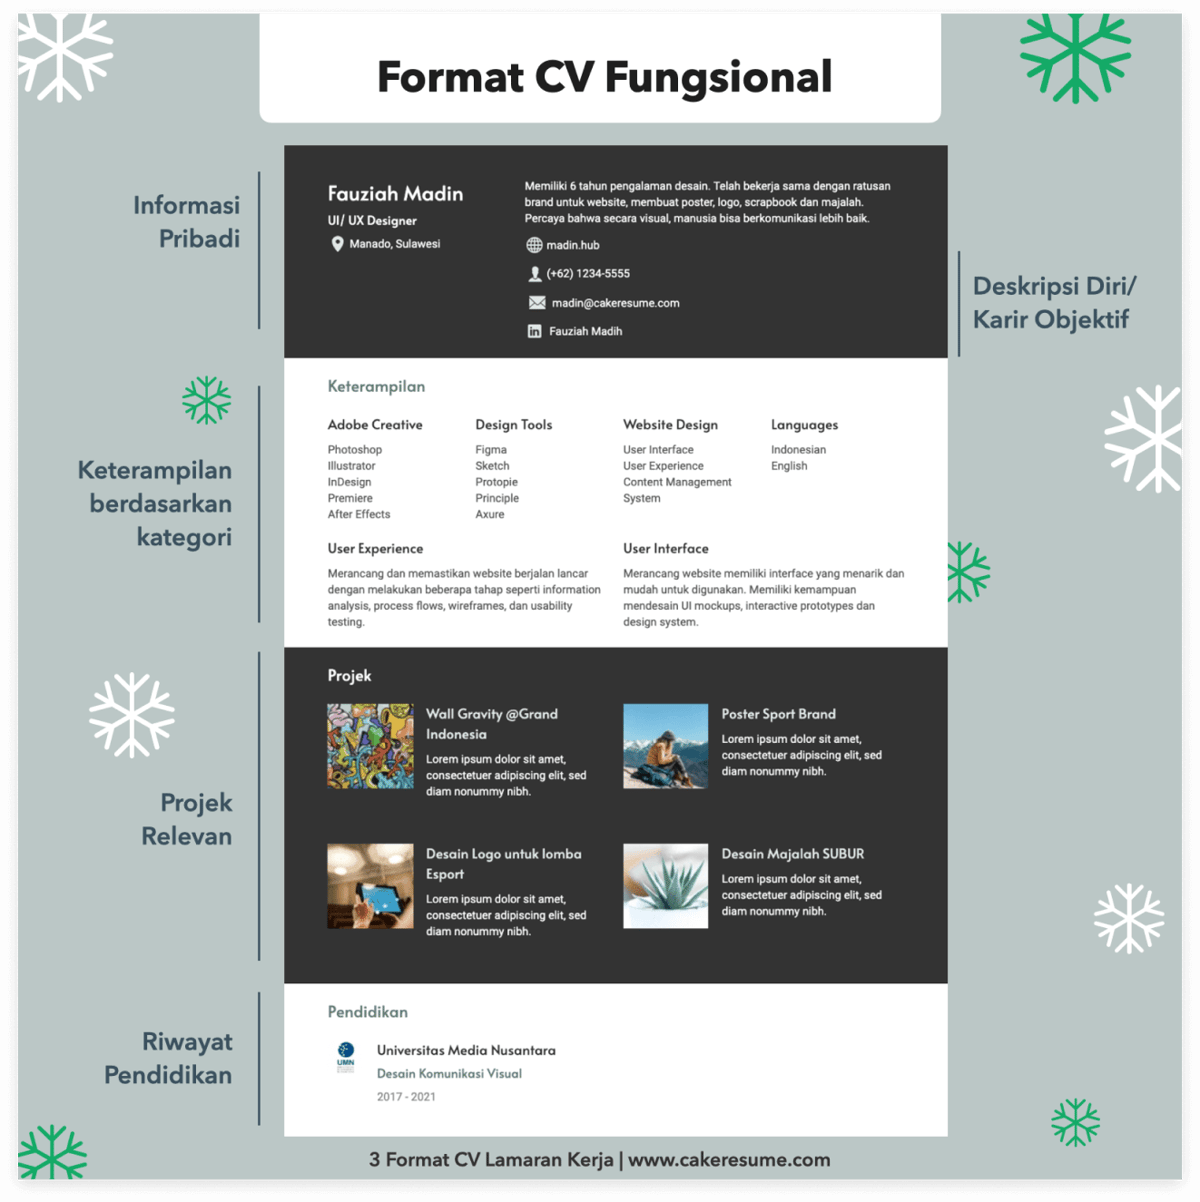 Tipe Format CV Lamaran: Format Resume Fungsional